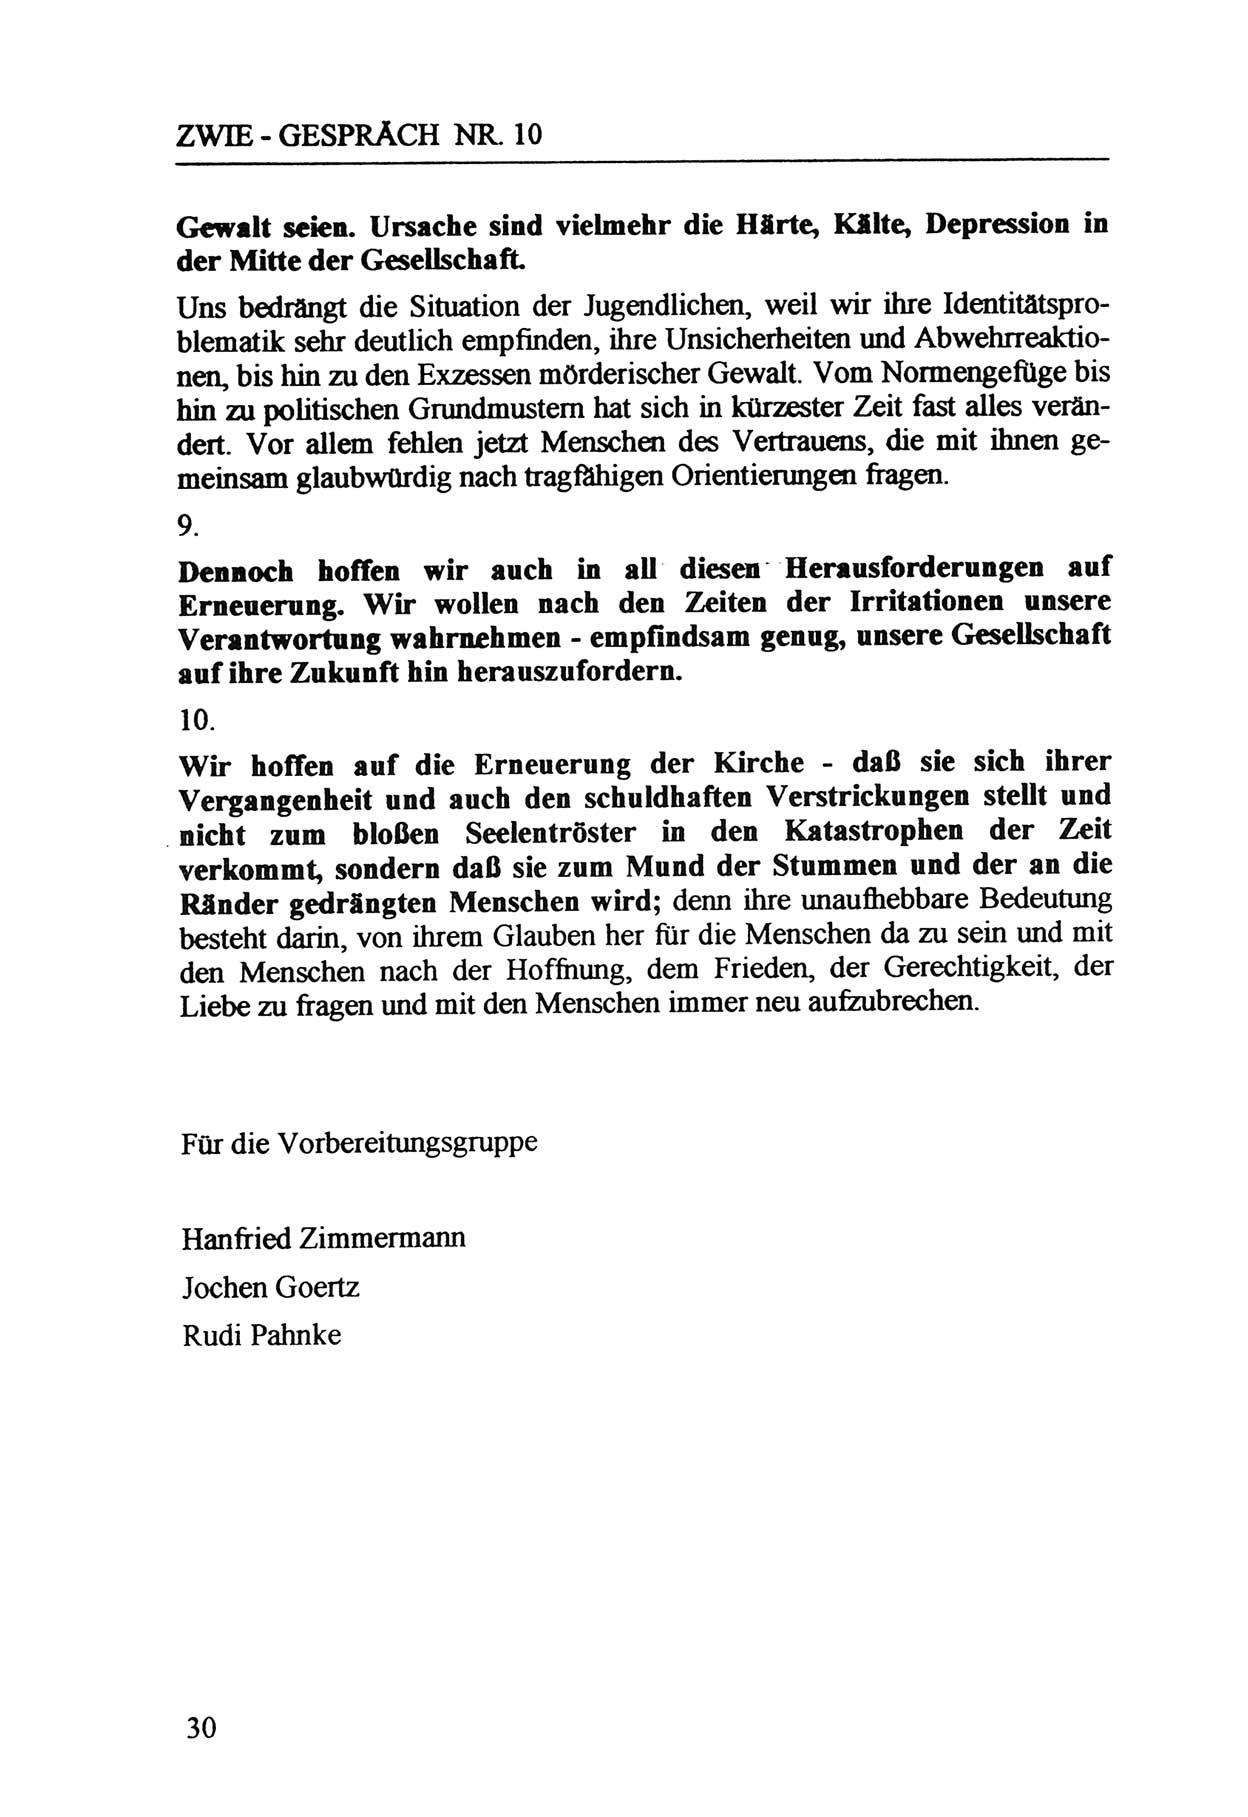 Zwie-Gespräch, Beiträge zur Aufarbeitung der Staatssicherheits-Vergangenheit [Deutsche Demokratische Republik (DDR)], Ausgabe Nr. 10, Berlin 1992, Seite 30 (Zwie-Gespr. Ausg. 10 1992, S. 30)